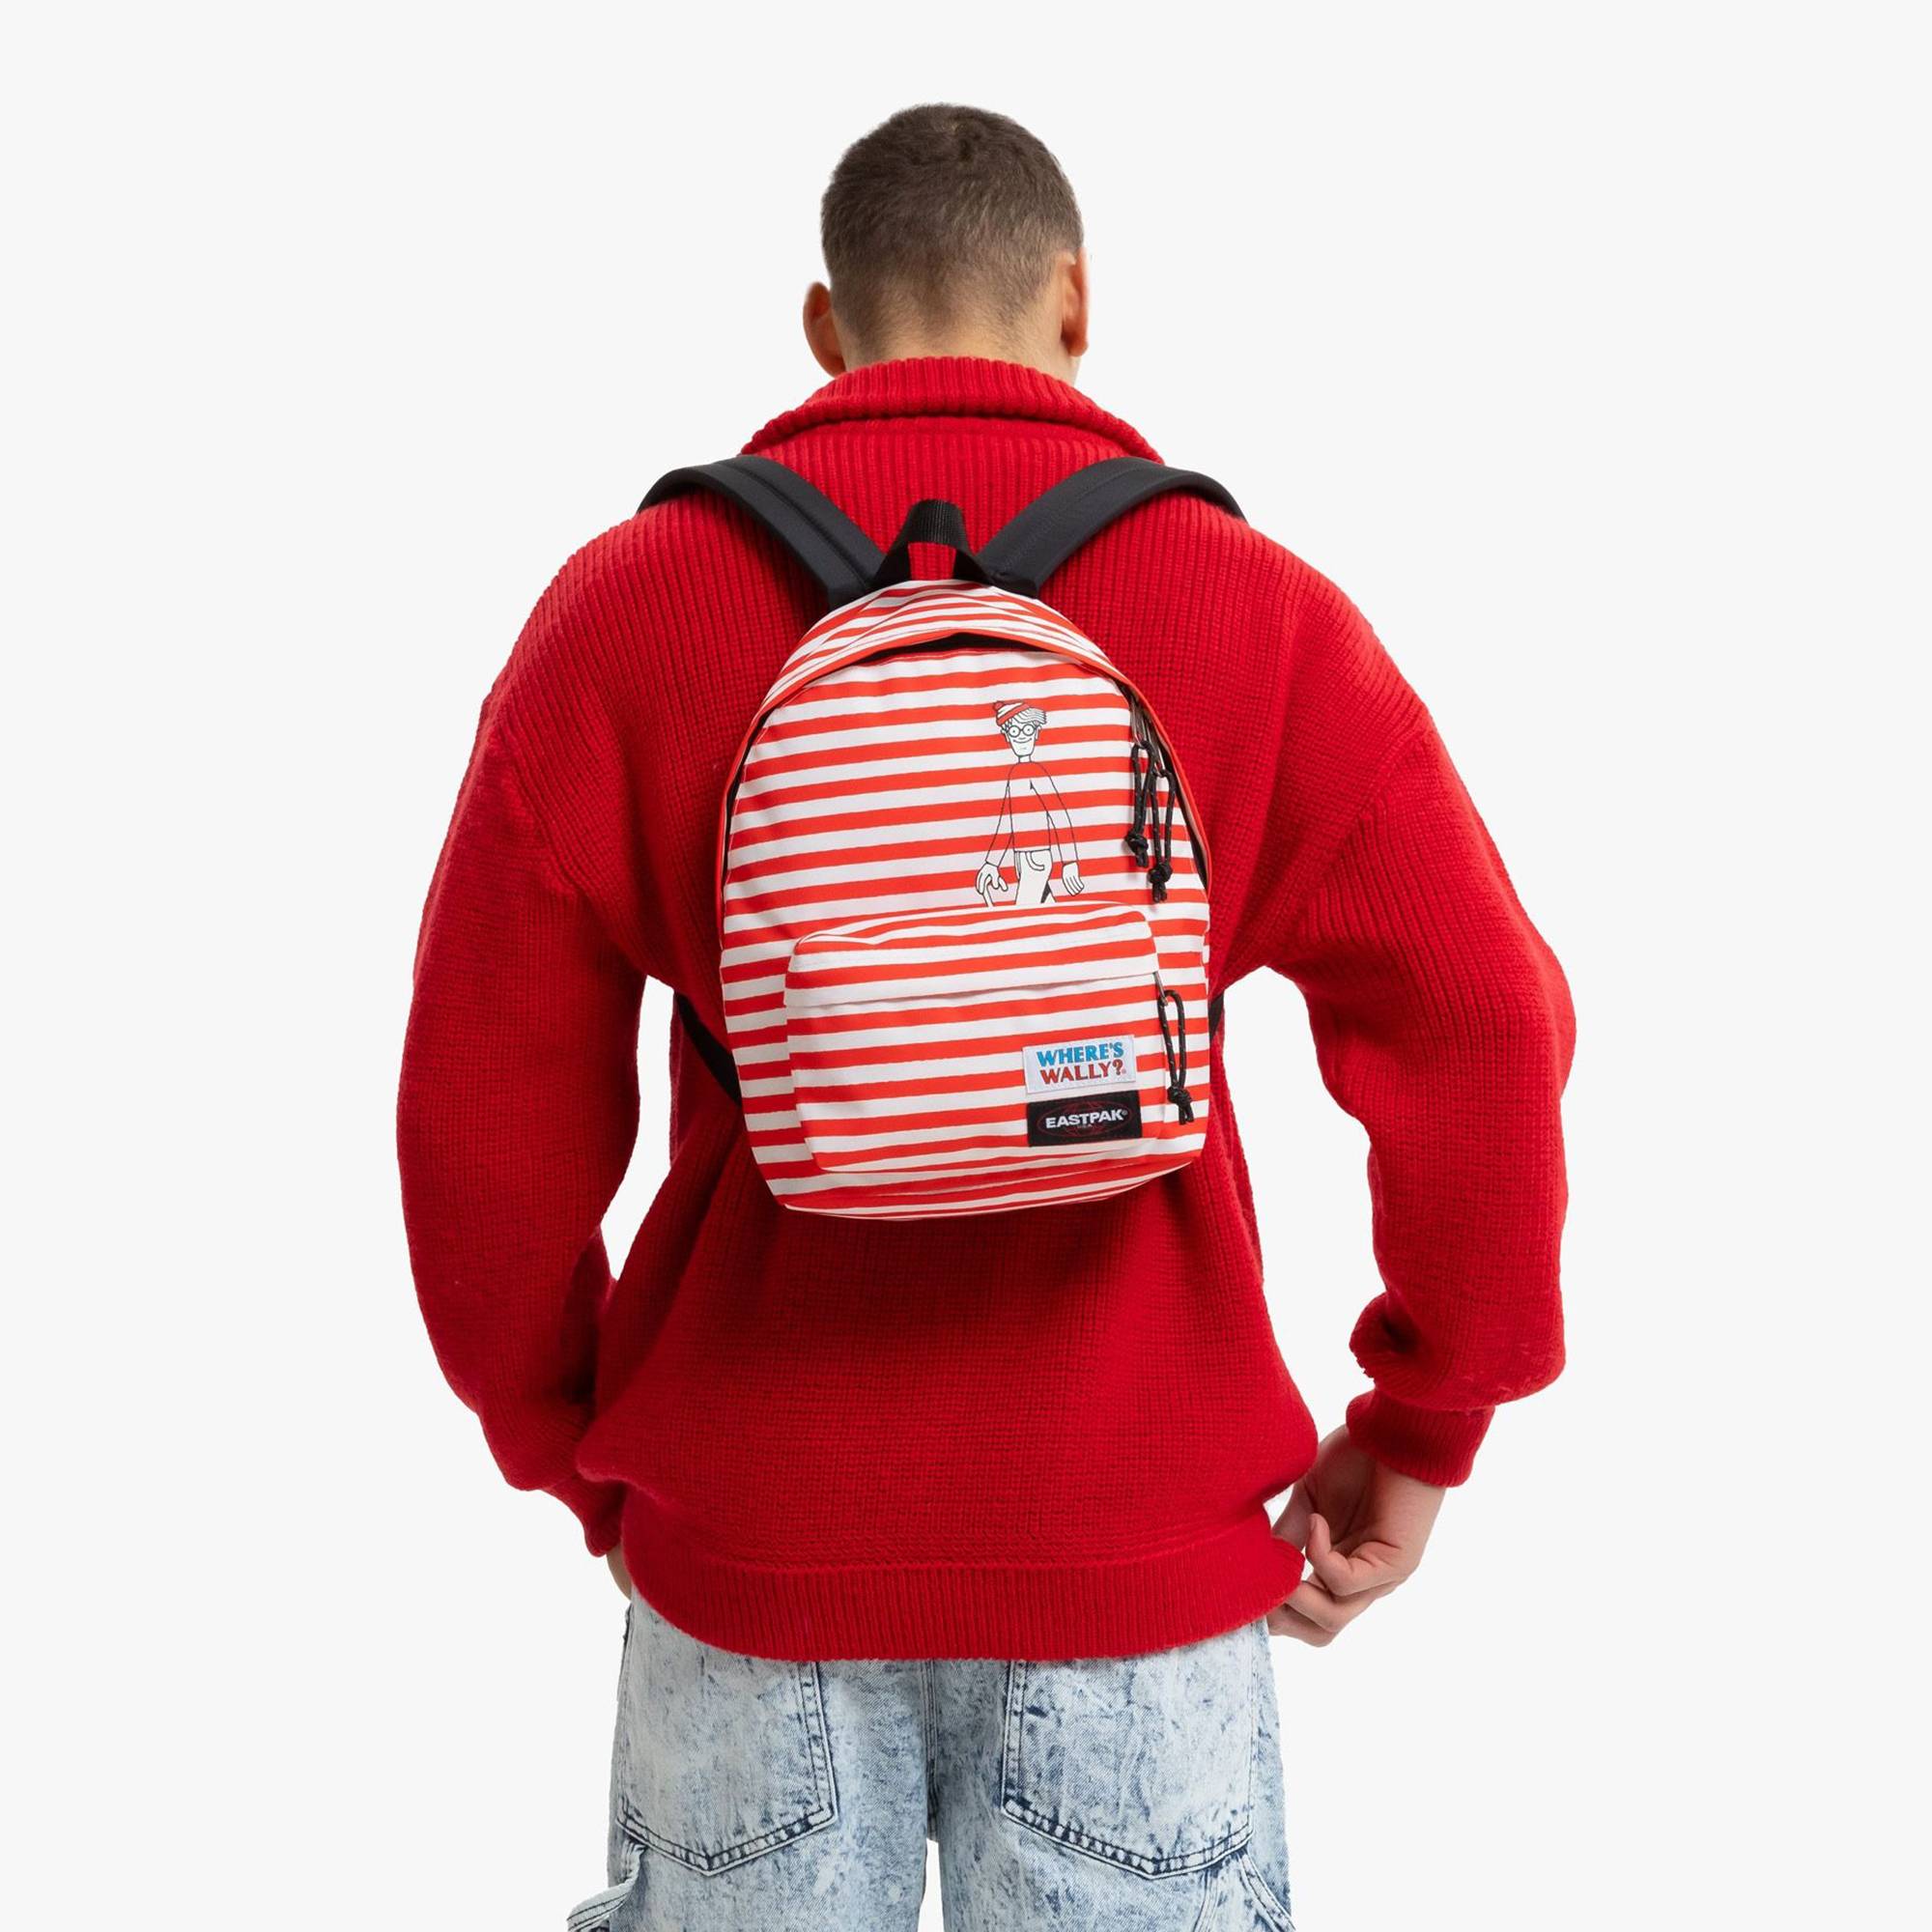 Petit sac à dos Eastpak Orbit XS K043-2E5 couleur Wally Silk Stripe (Rouge), porté mannequin homme